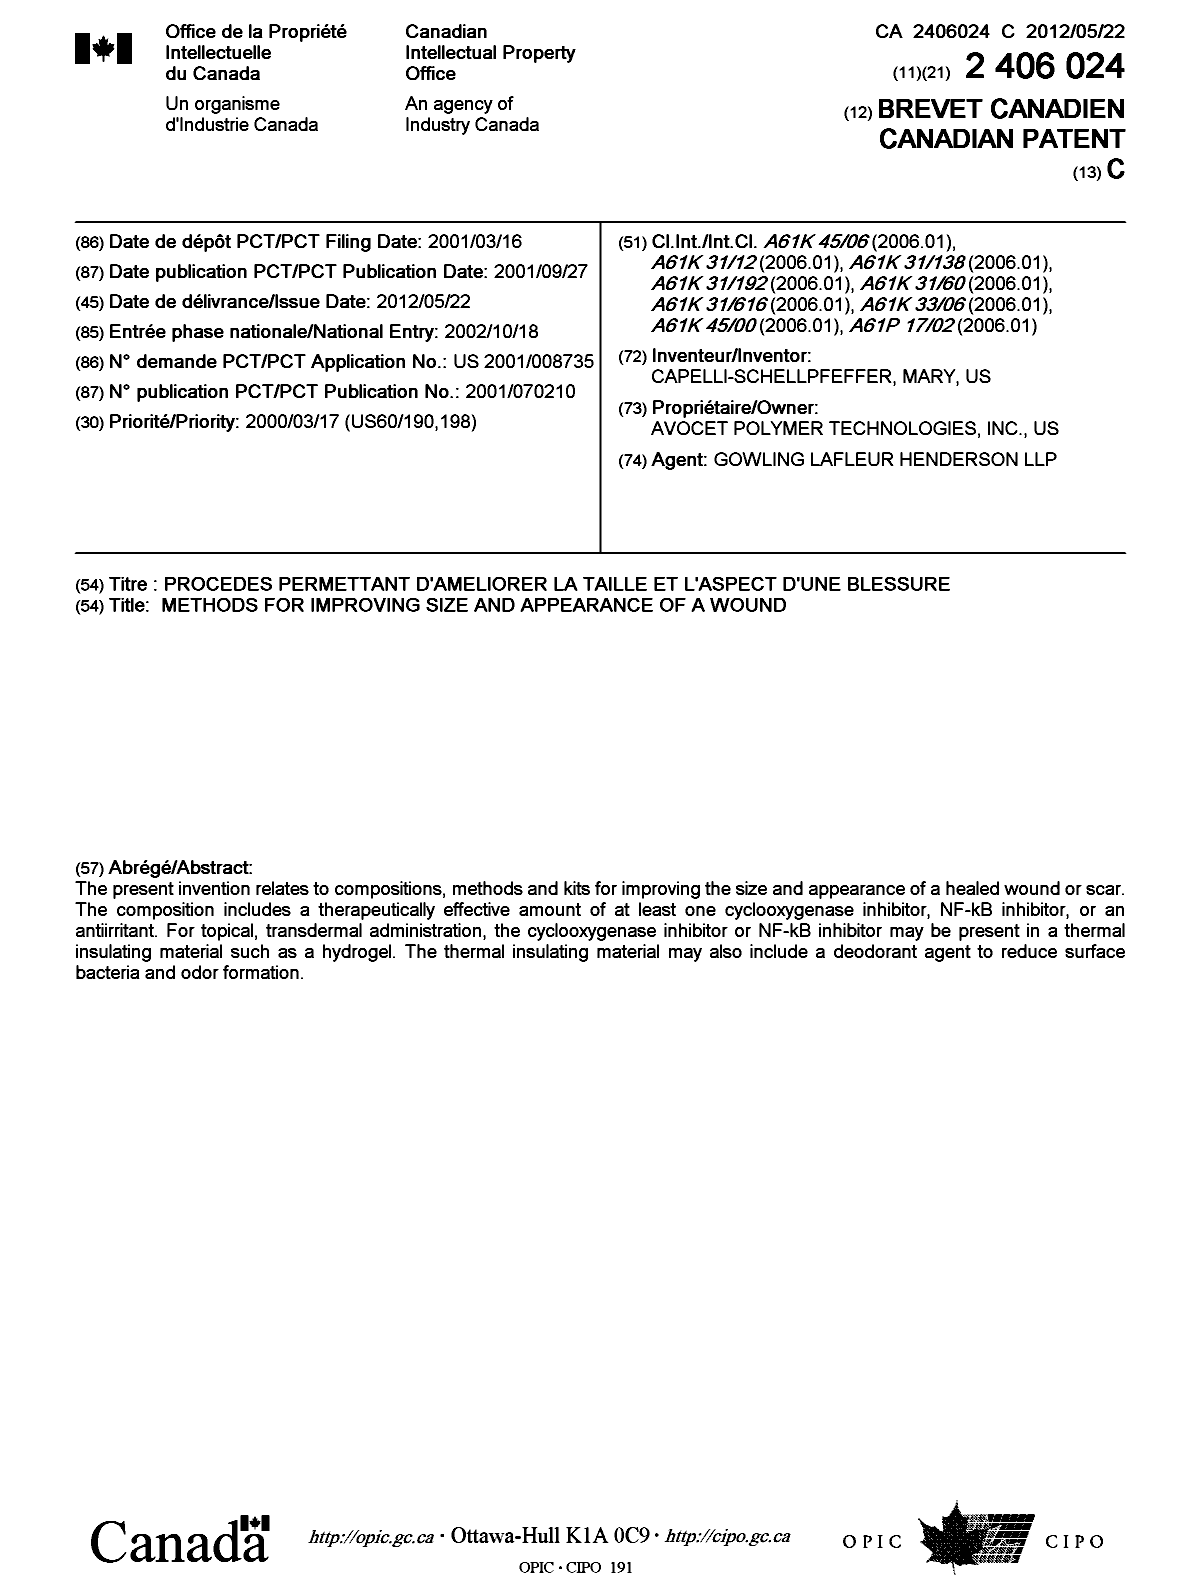 Document de brevet canadien 2406024. Page couverture 20111226. Image 1 de 1